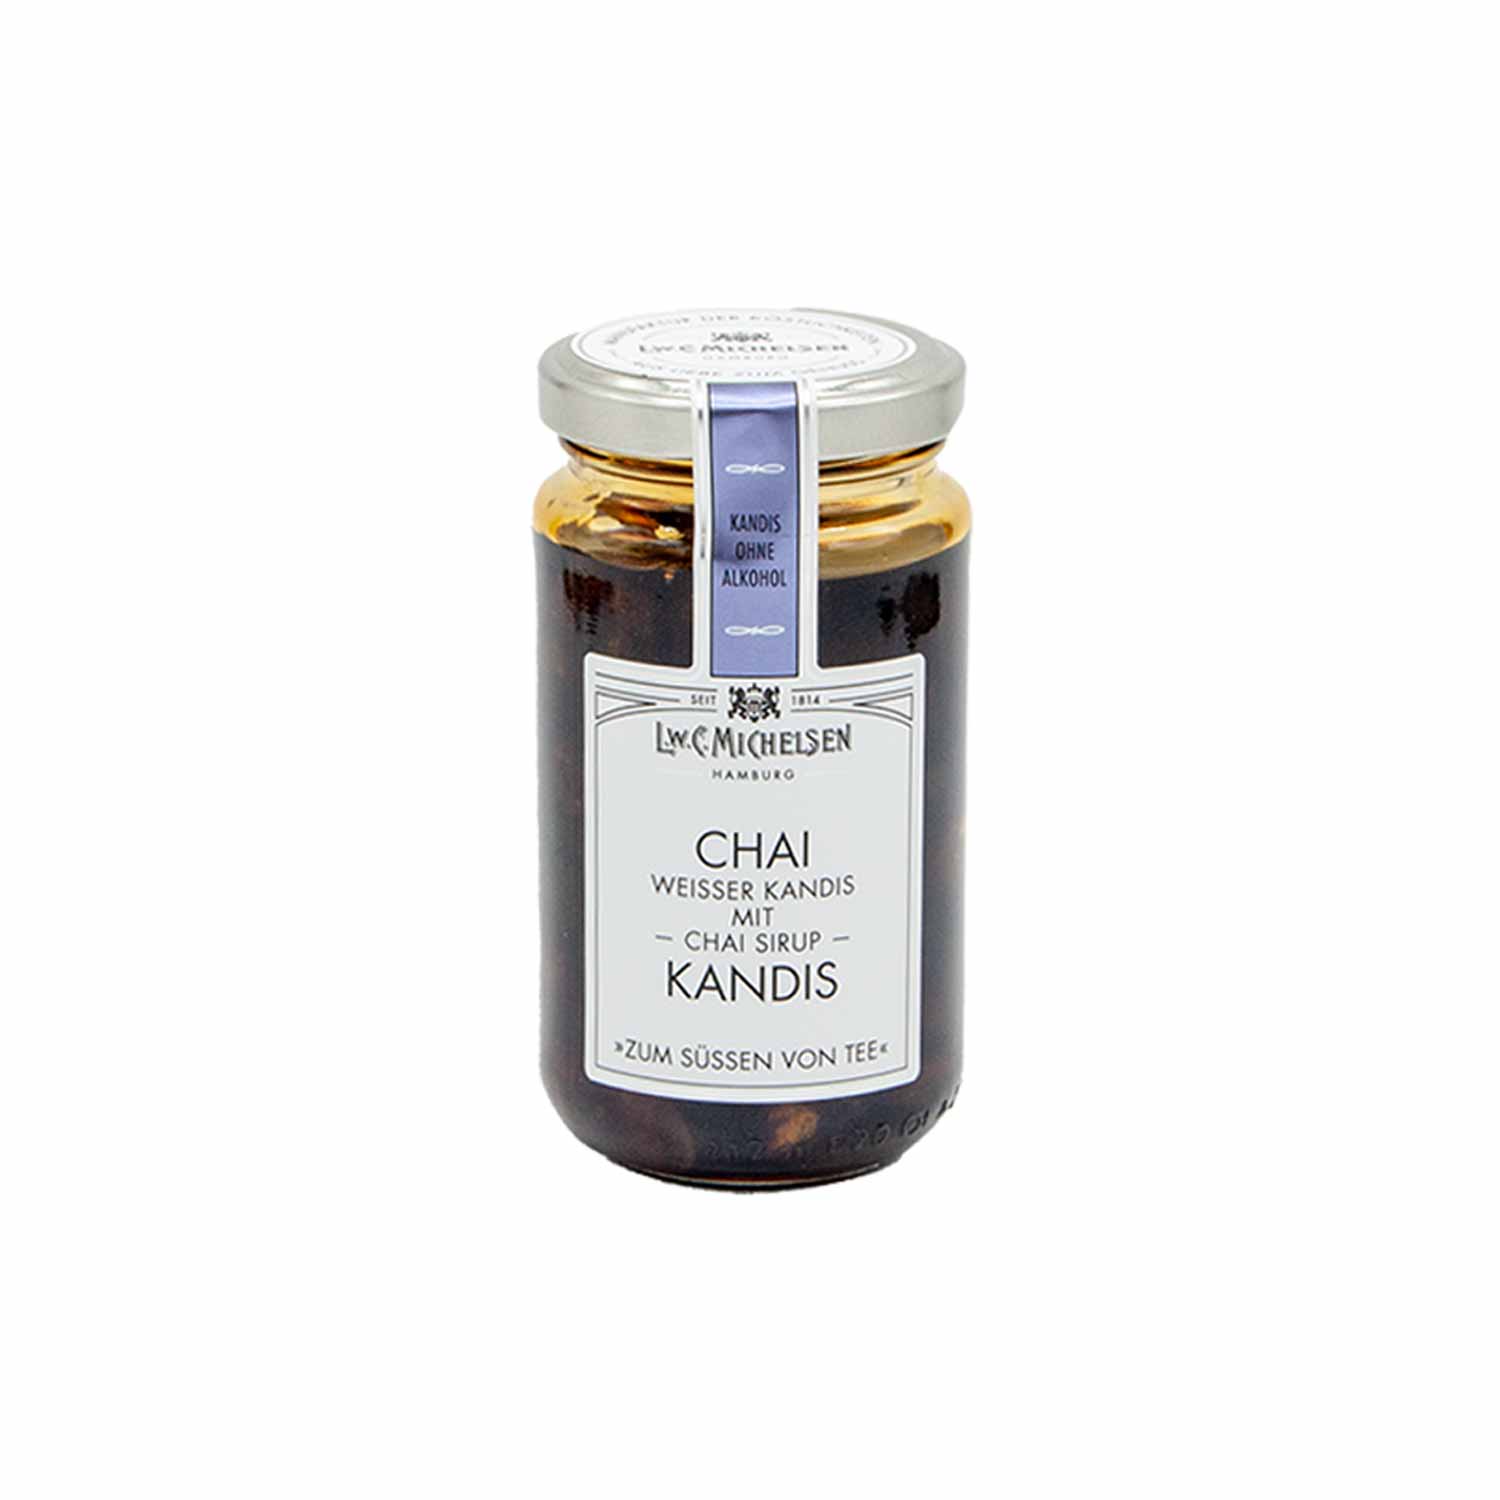 Weißer Kandis mit Chai-Sirup, 250 g